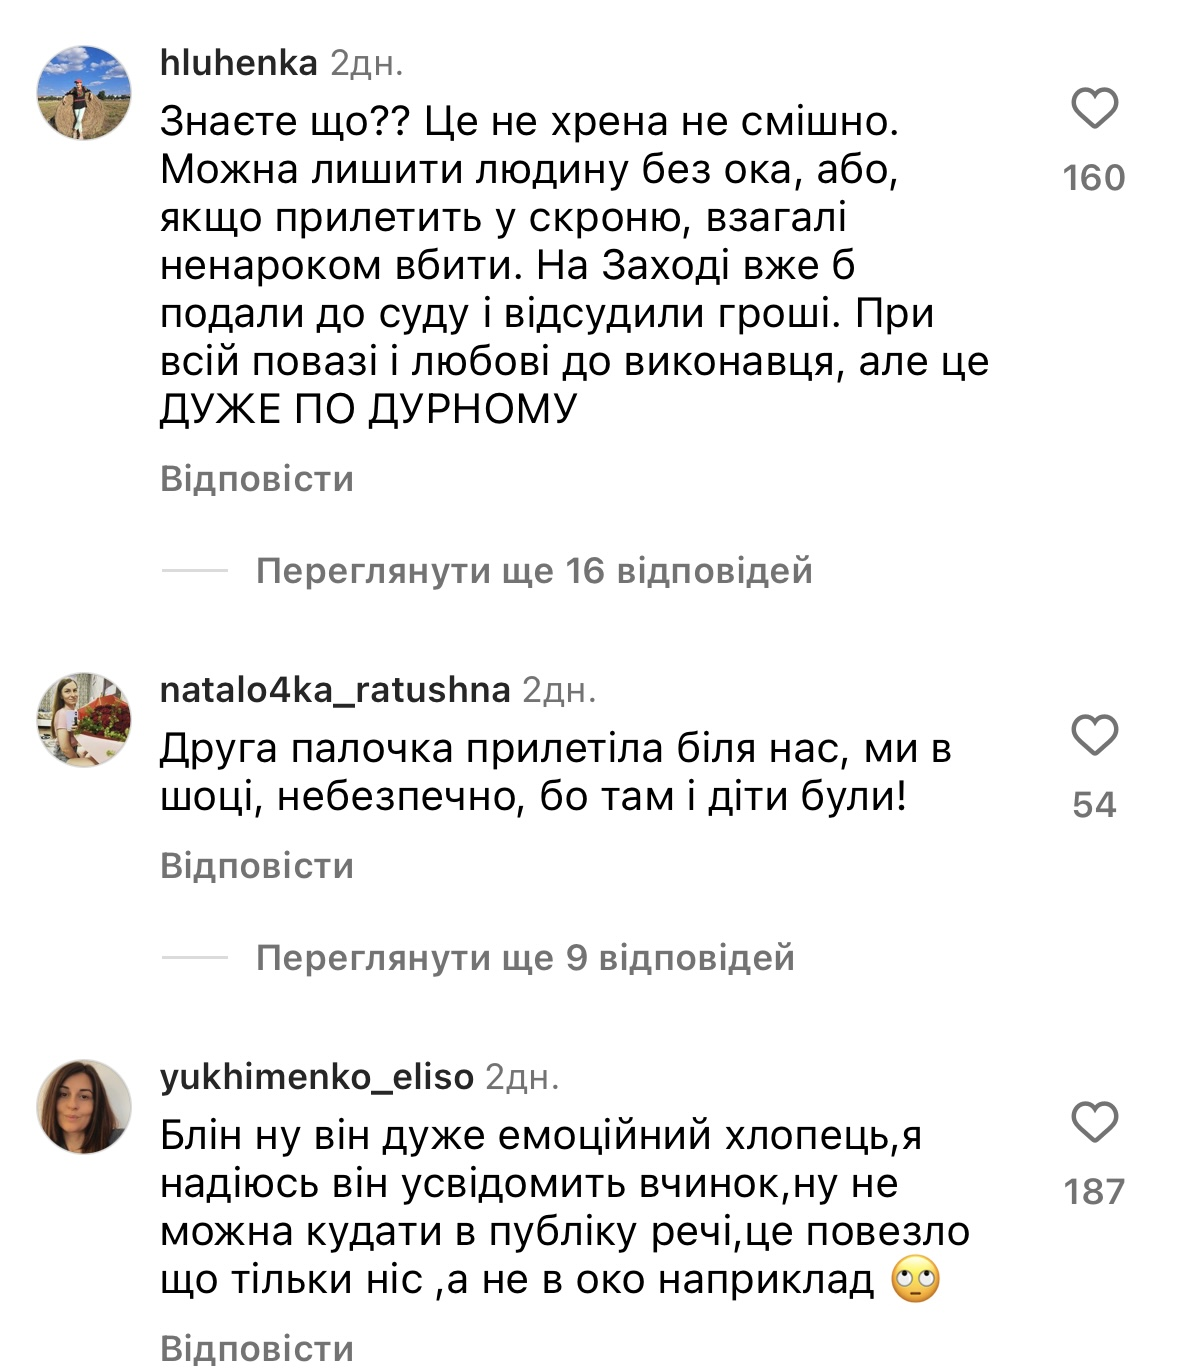 Пивоваров на концерте сломал нос своей поклоннице: девушка счастлива, украинцы возмущены. Фото и видео